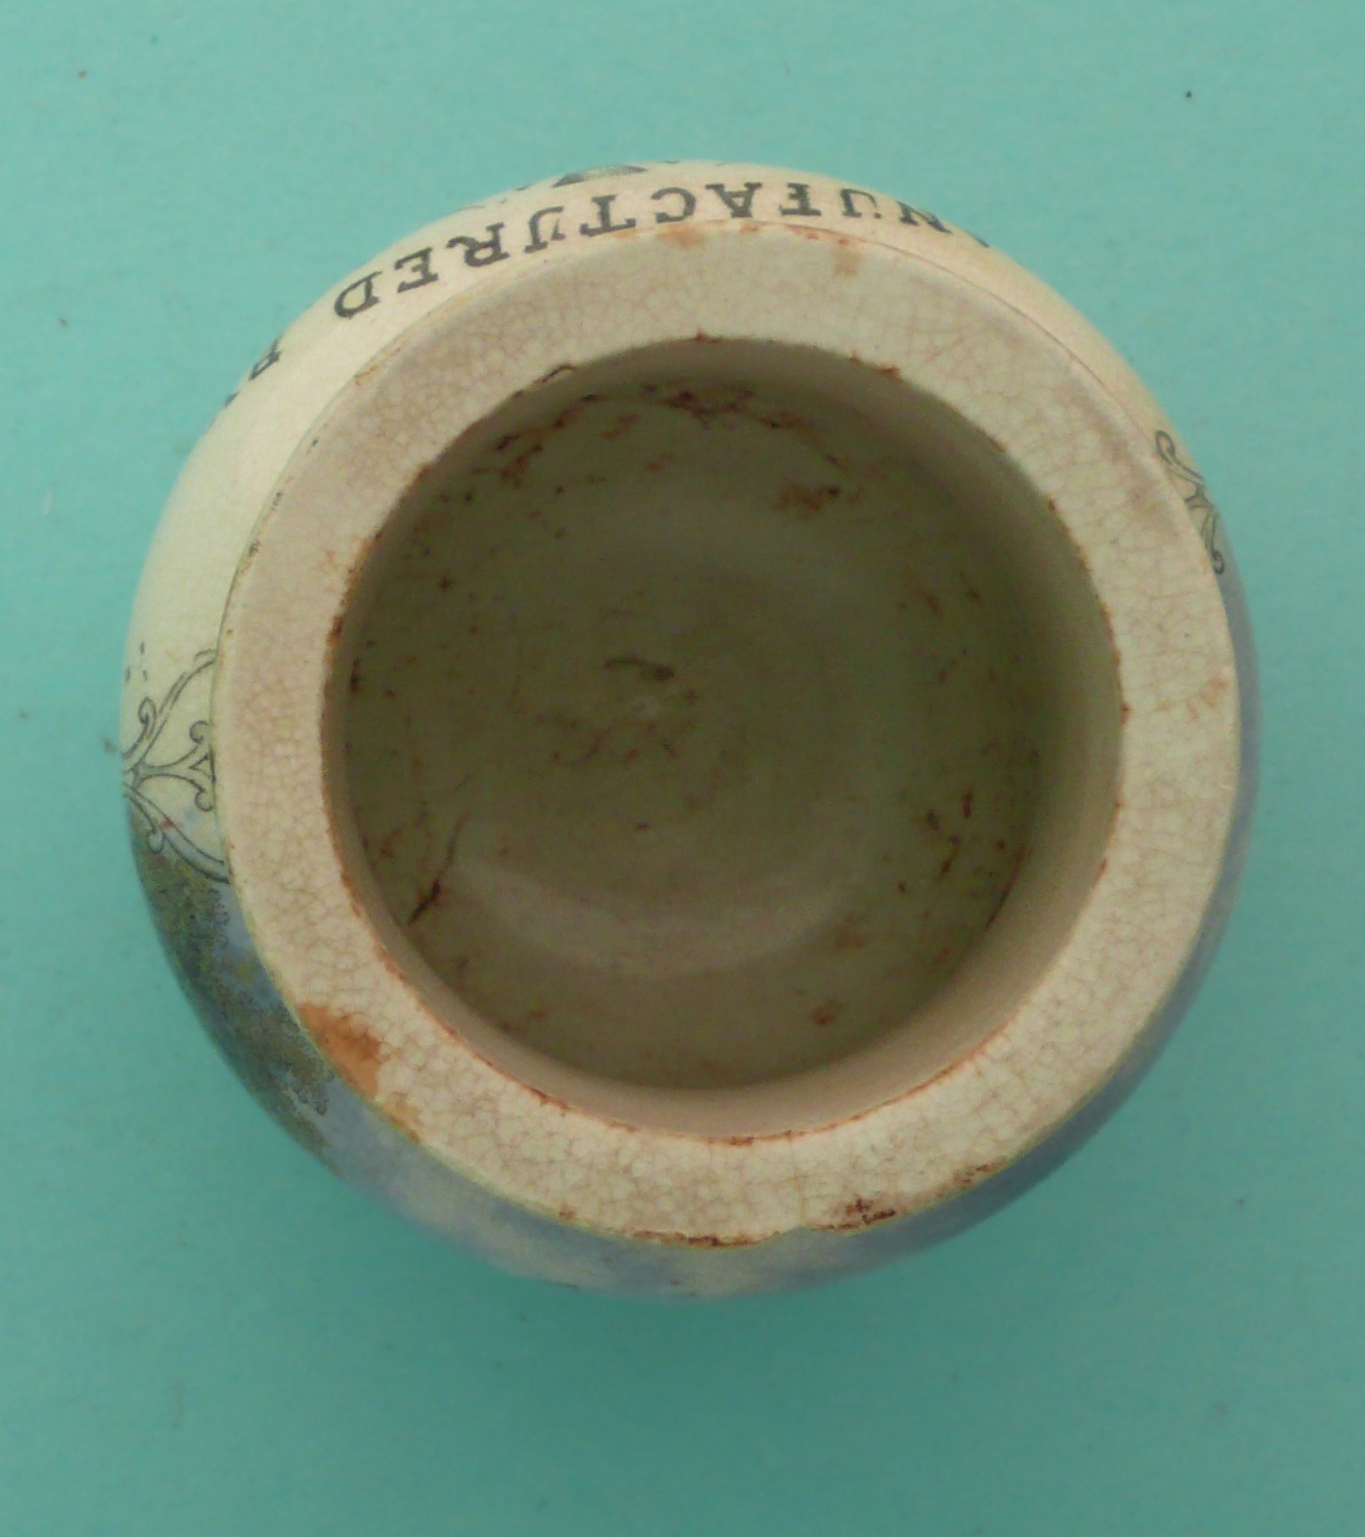 Windsor Castle, Hill & Ledger (96C) rim and foot chipped. (potlid, pot lid, Prattware, - Image 3 of 4